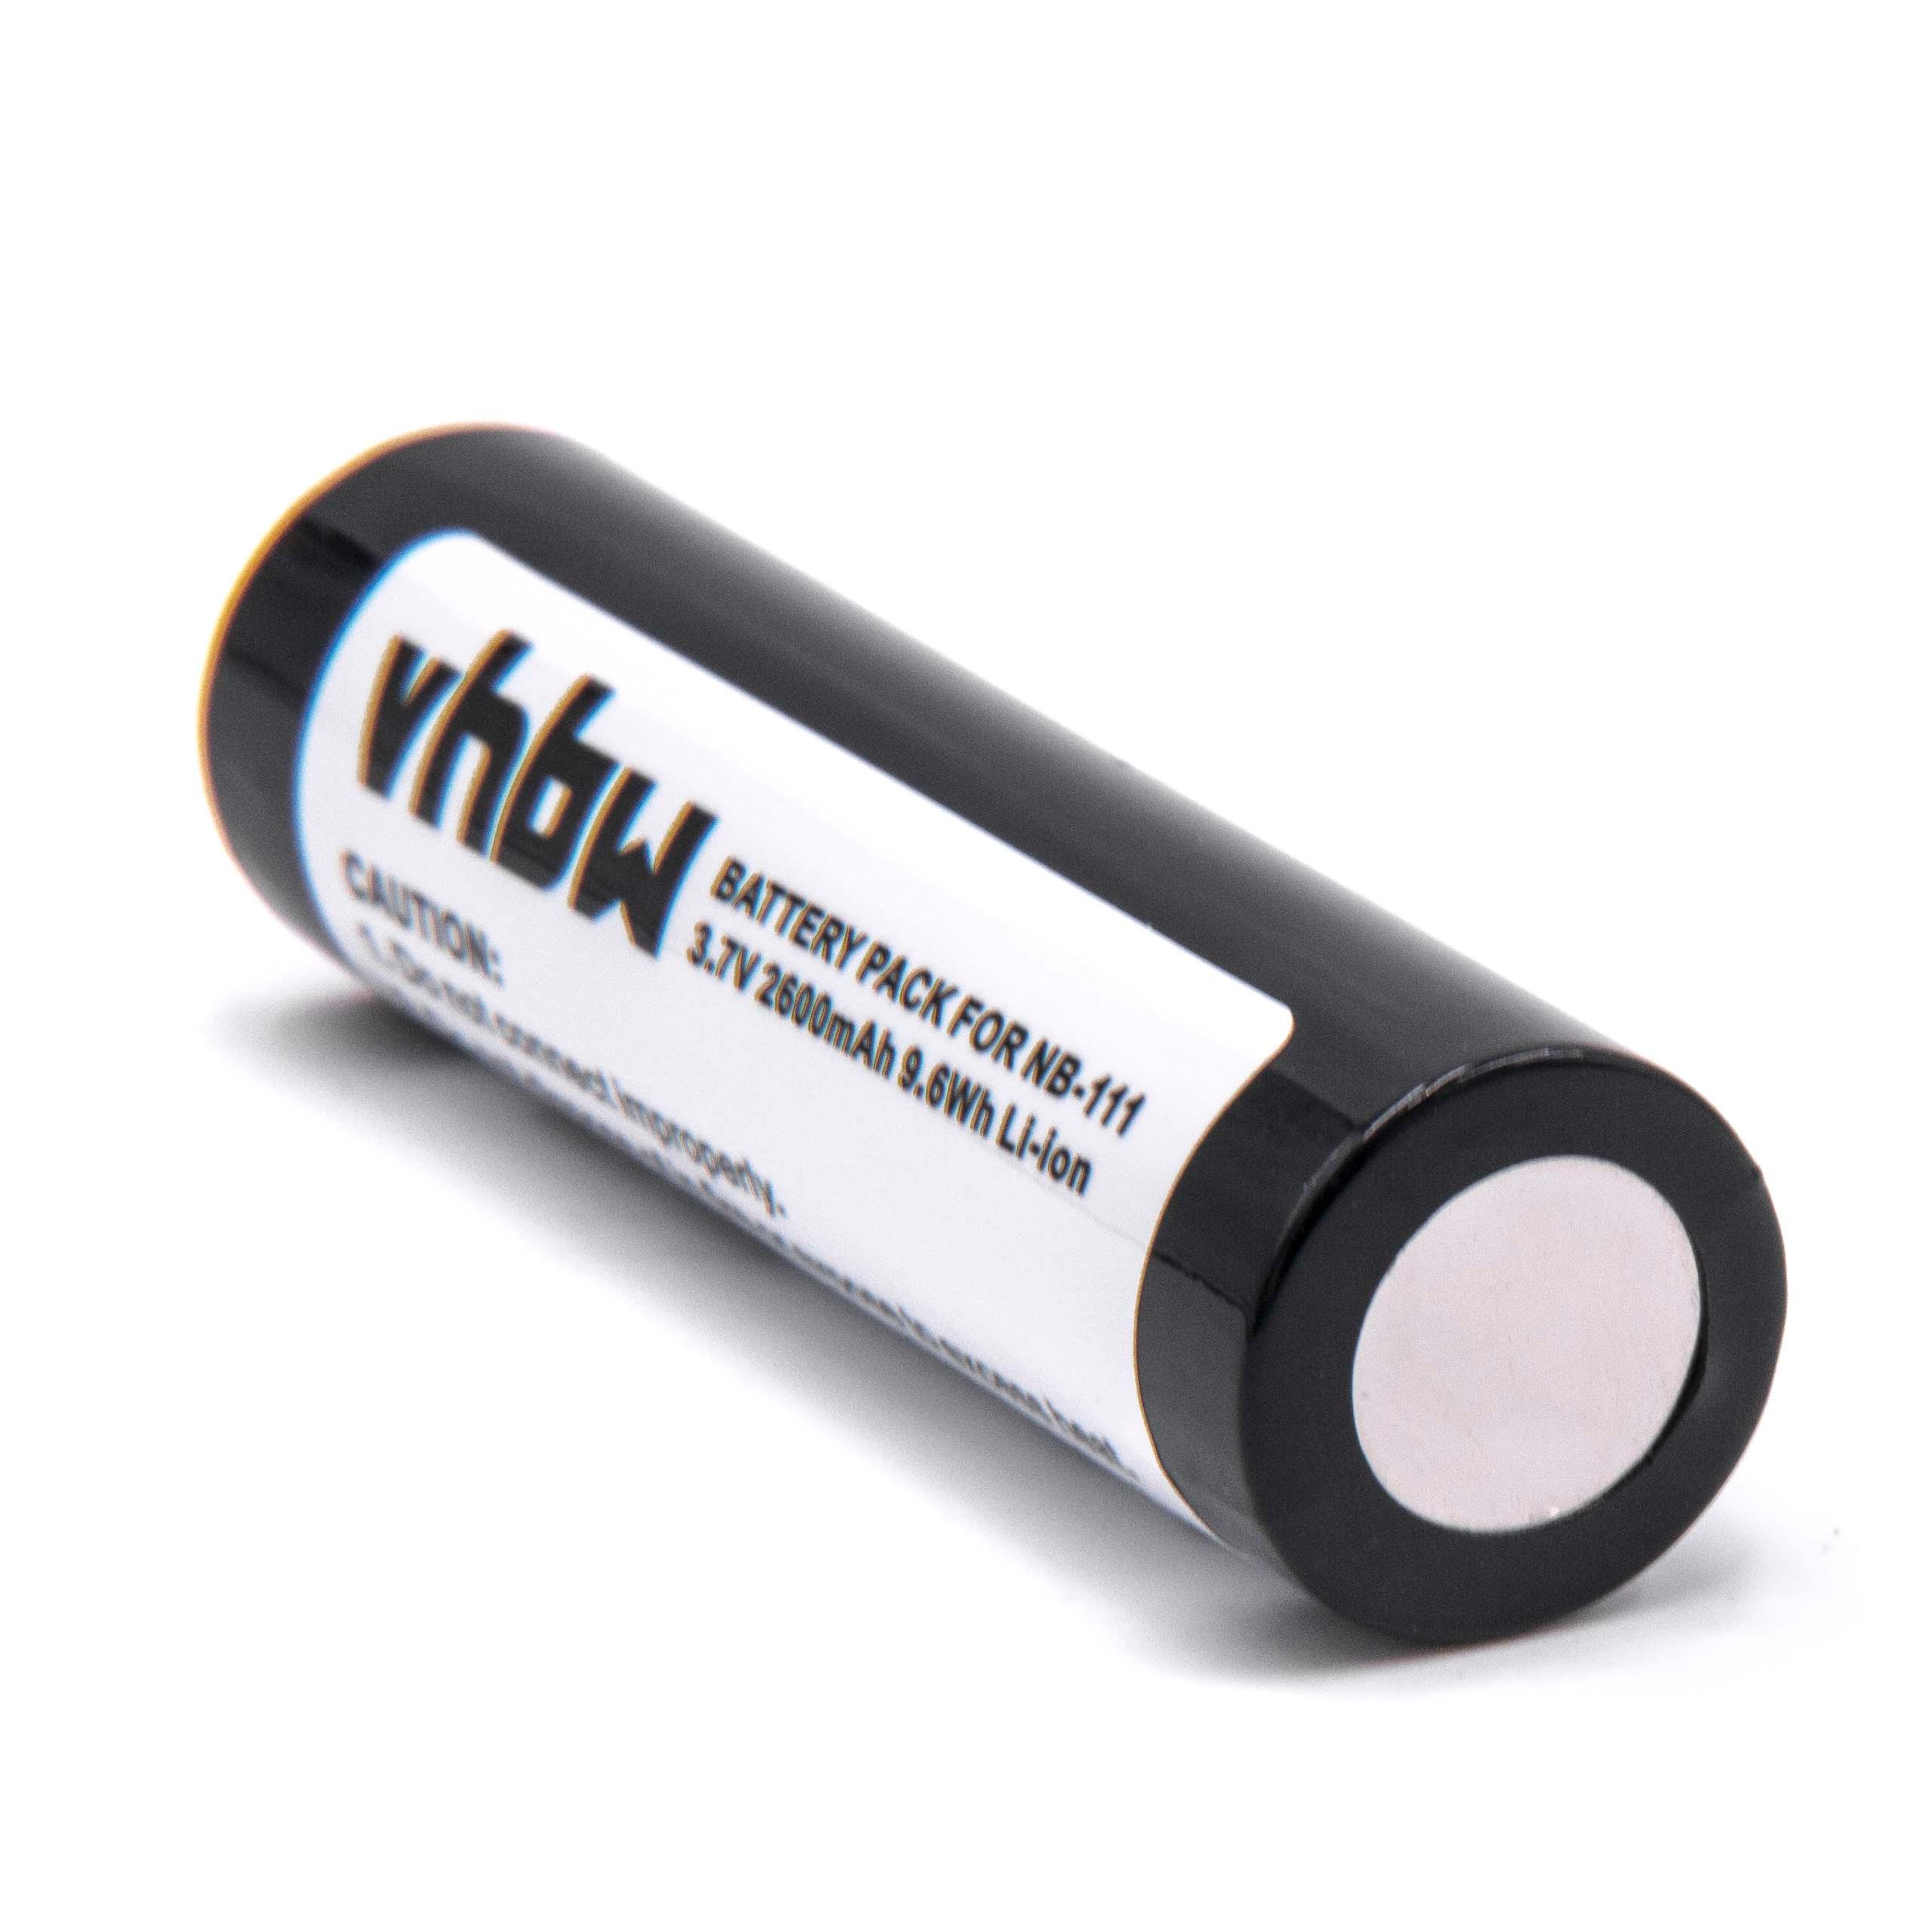 Batterie remplace BP-1600R pour mini disque - 2600mAh 3,7V Li-ion